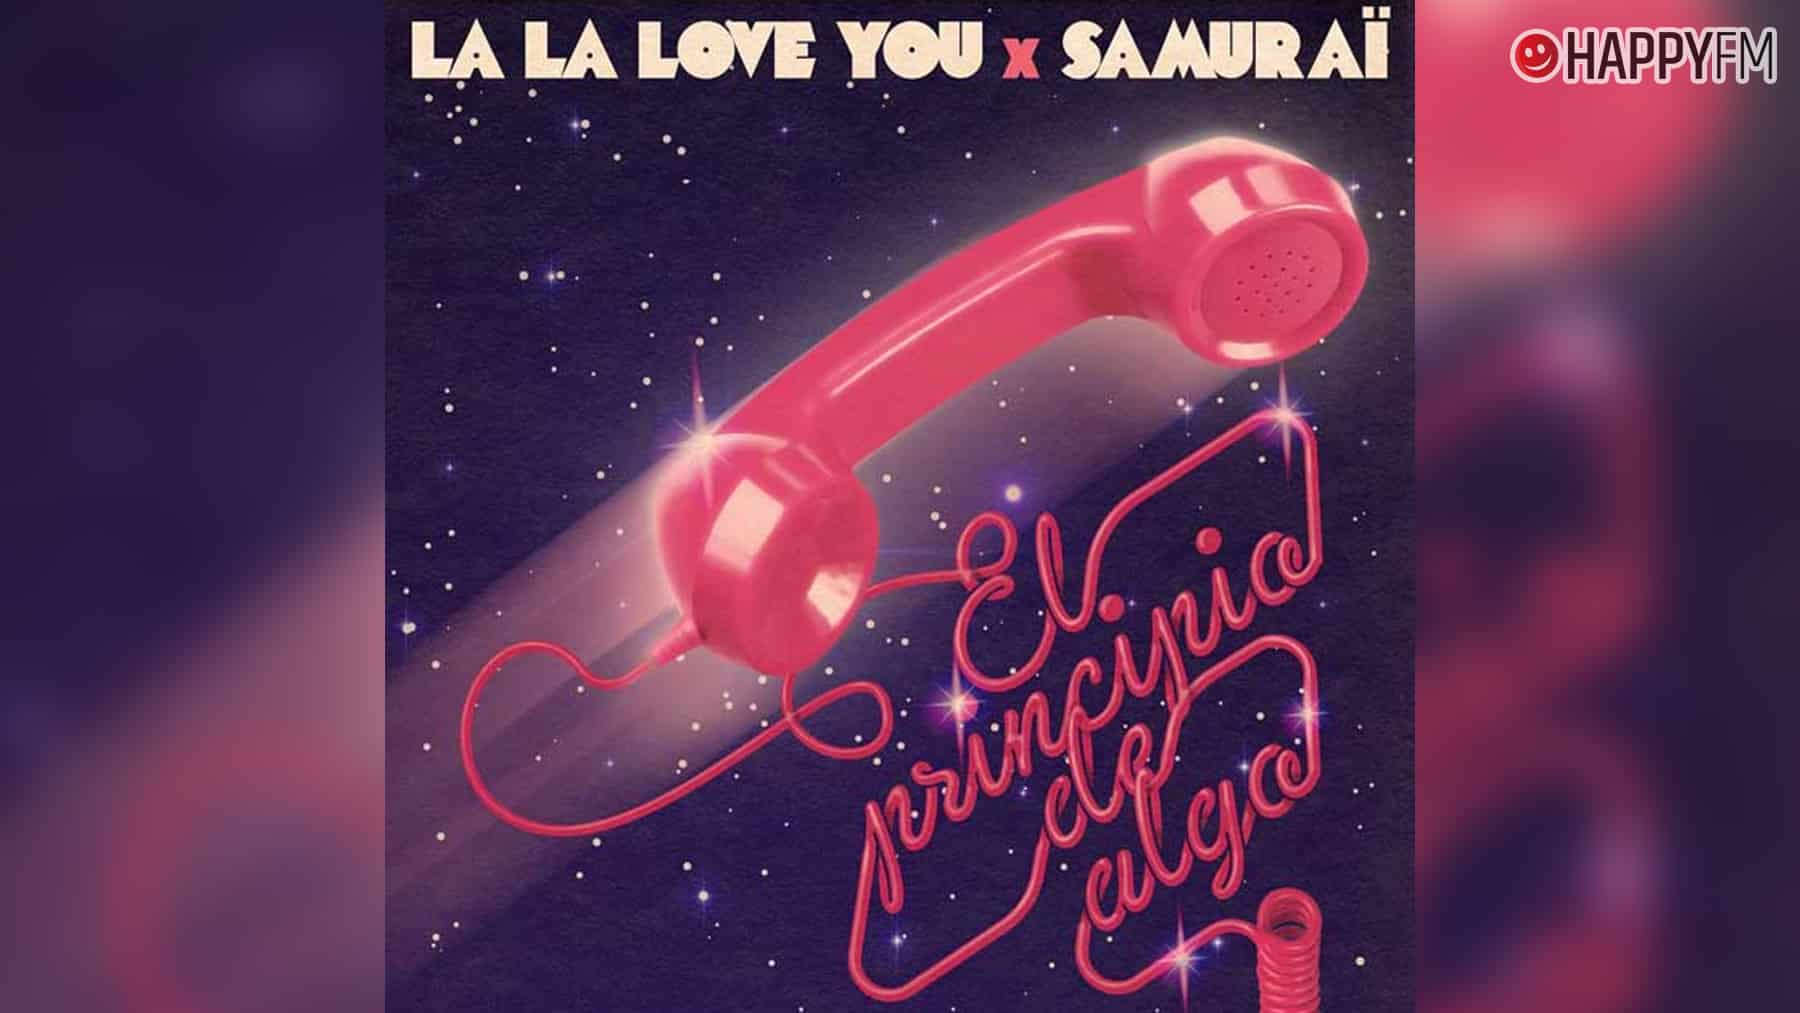 ‘El principio de algo’, de La La Love You y Samuraï: letra y vídeo